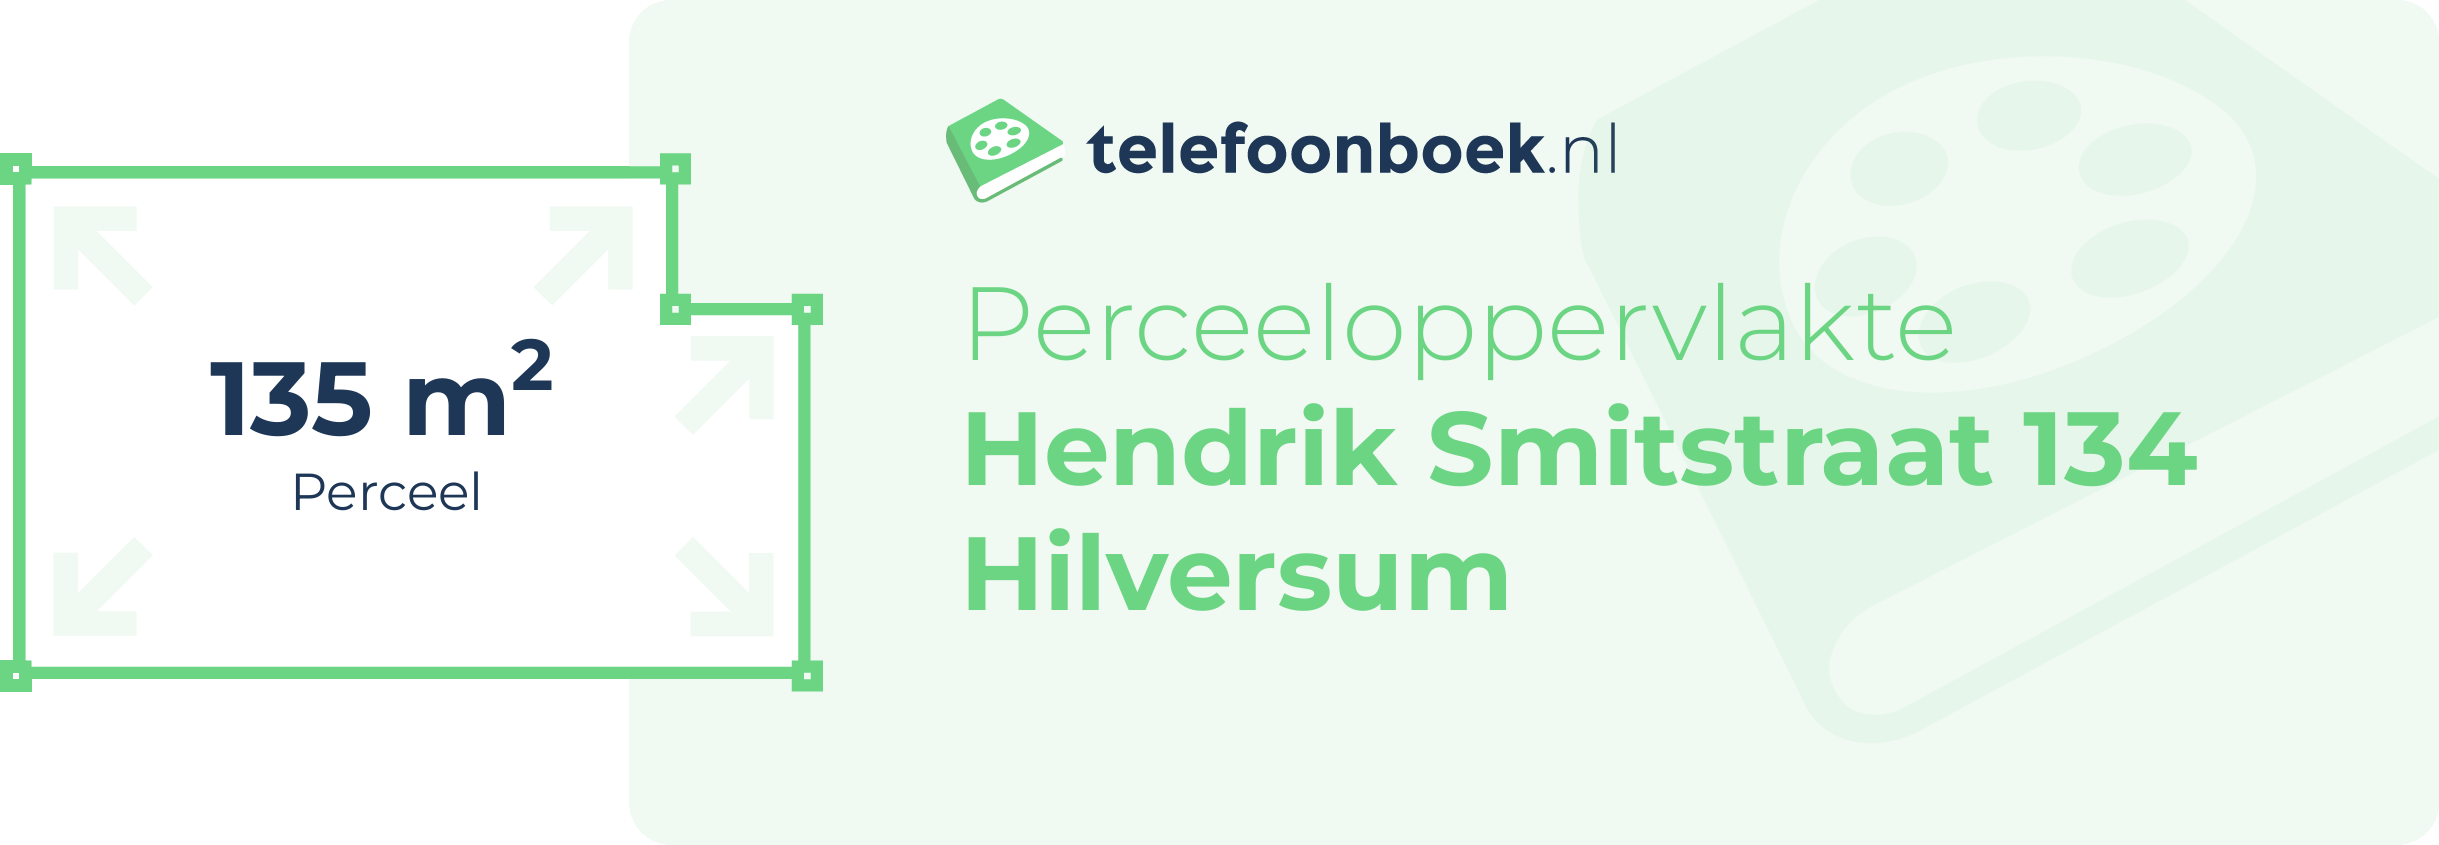 Perceeloppervlakte Hendrik Smitstraat 134 Hilversum